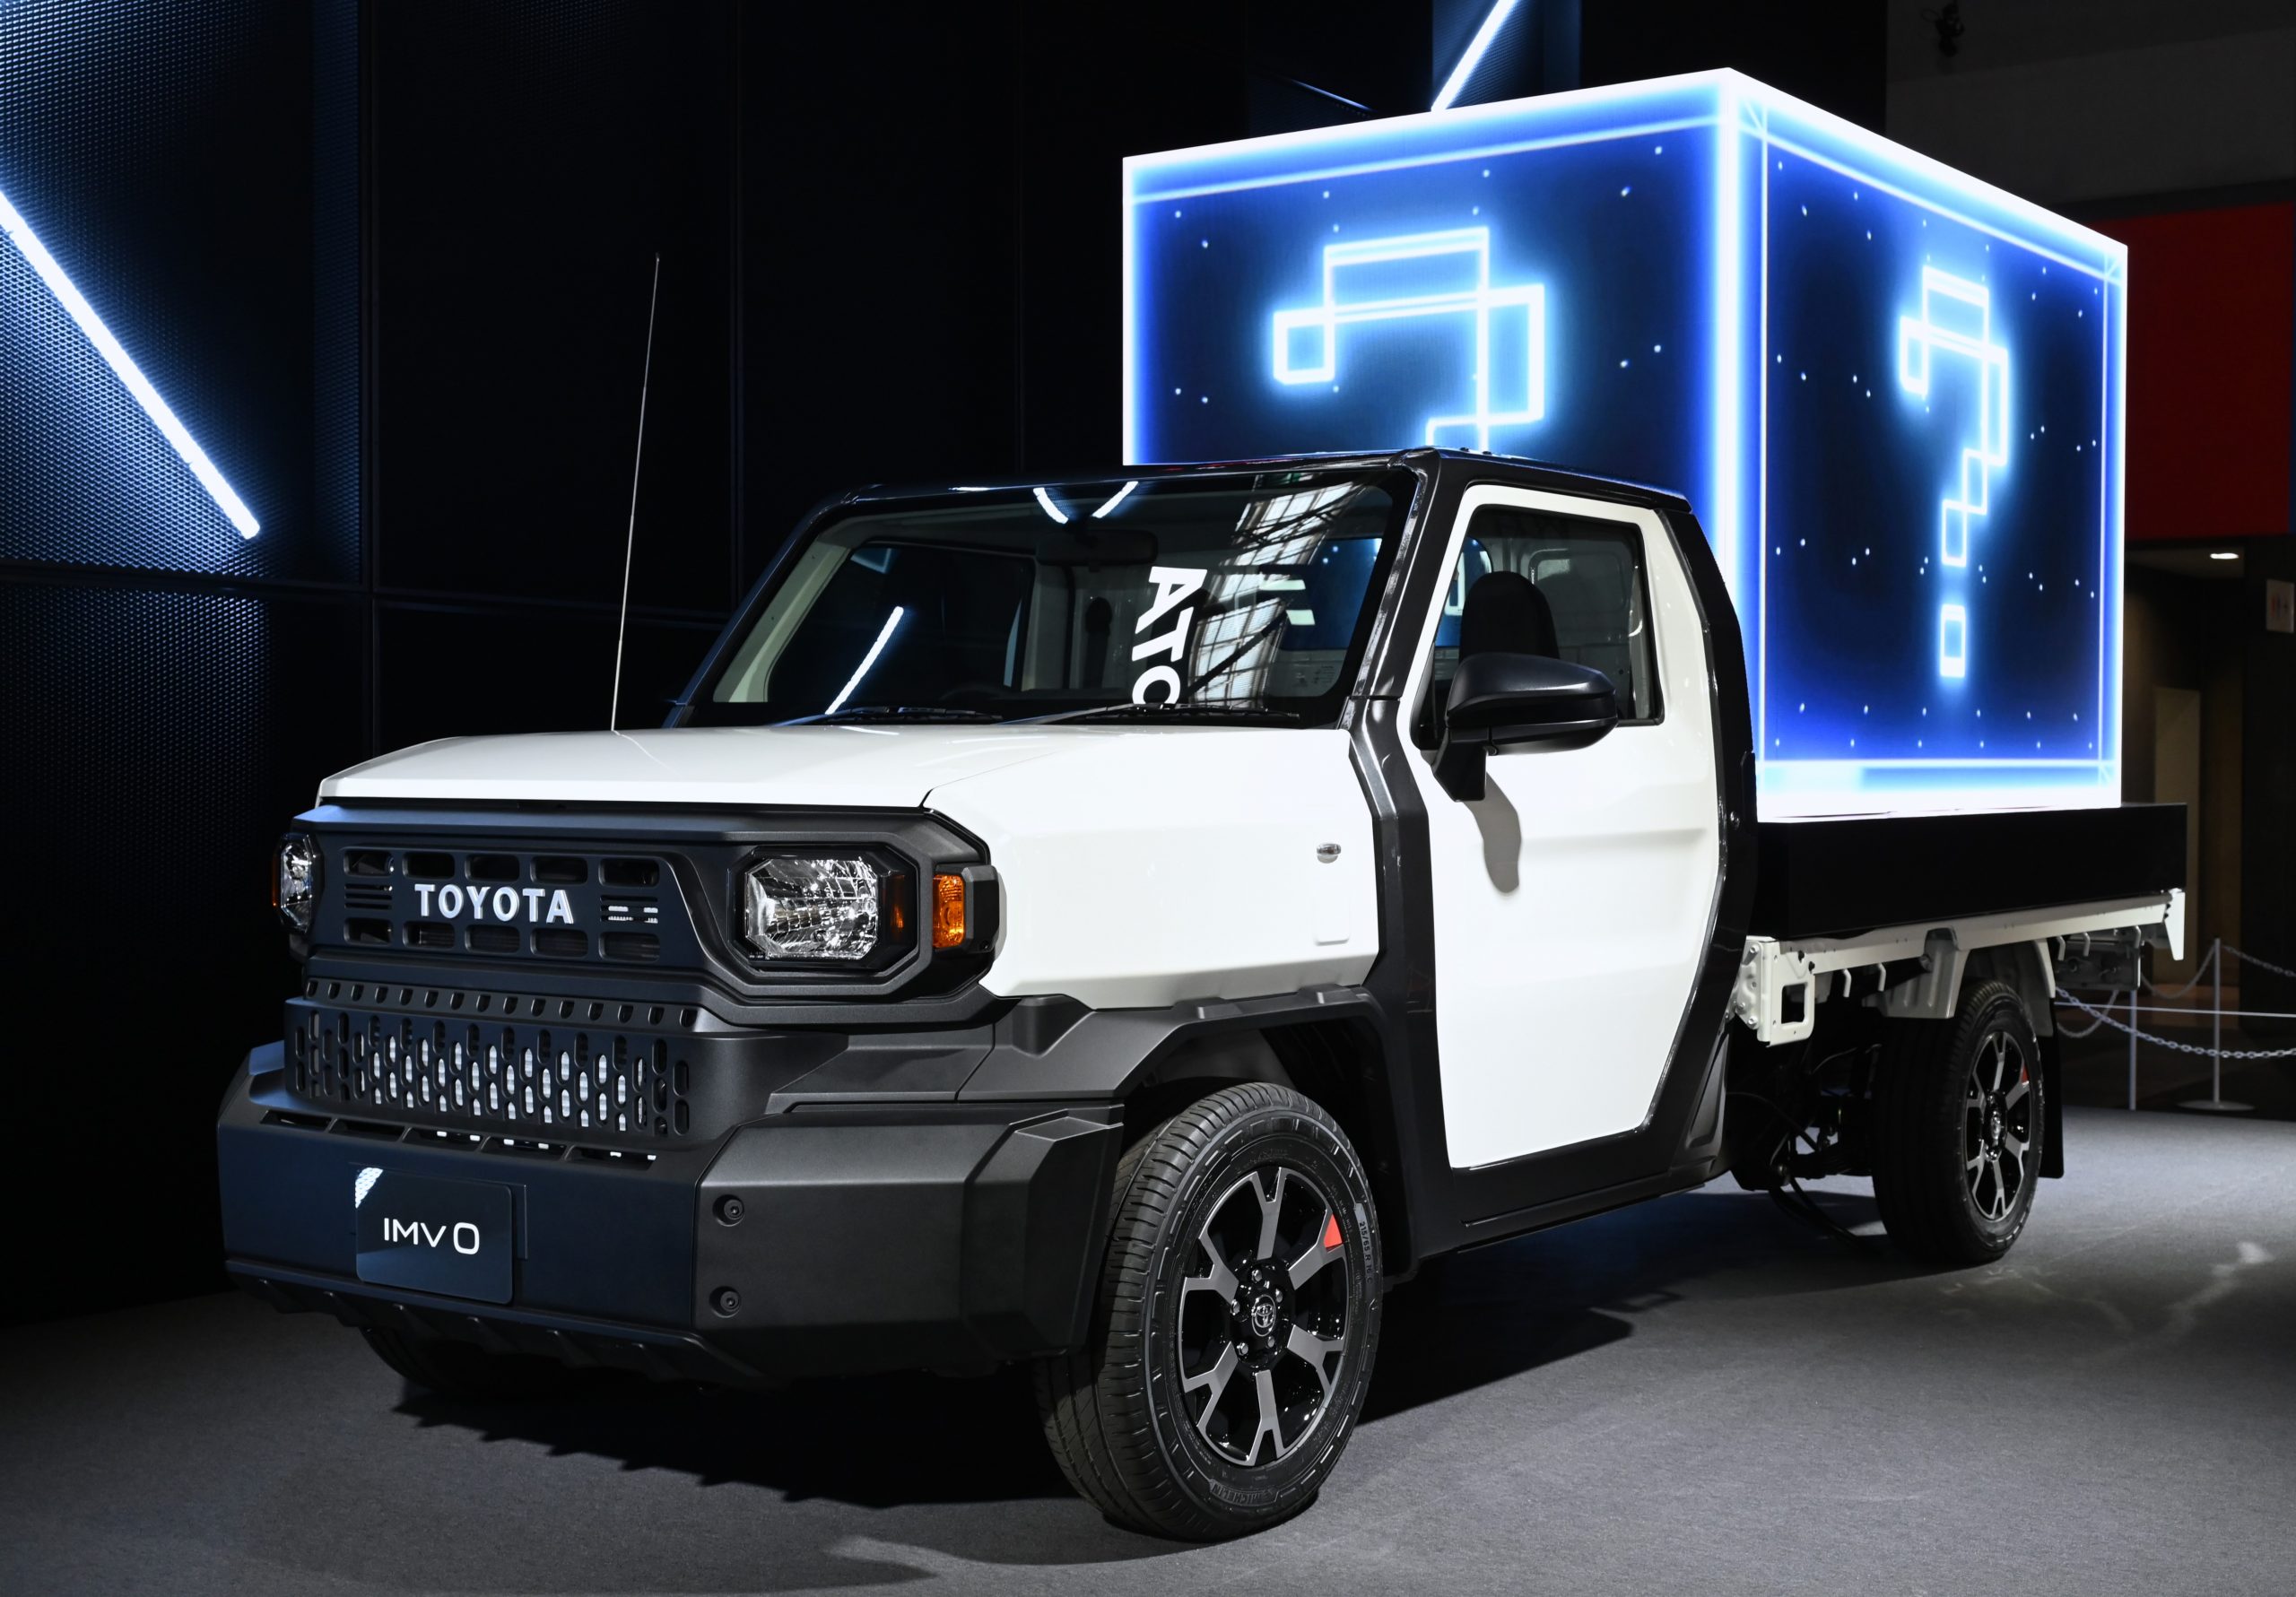 تويوتا تطرح شاحنة هايلكس تشامب الجديدة كلياً في آسيا بثلاثة محركات وتصميم عضلي 2